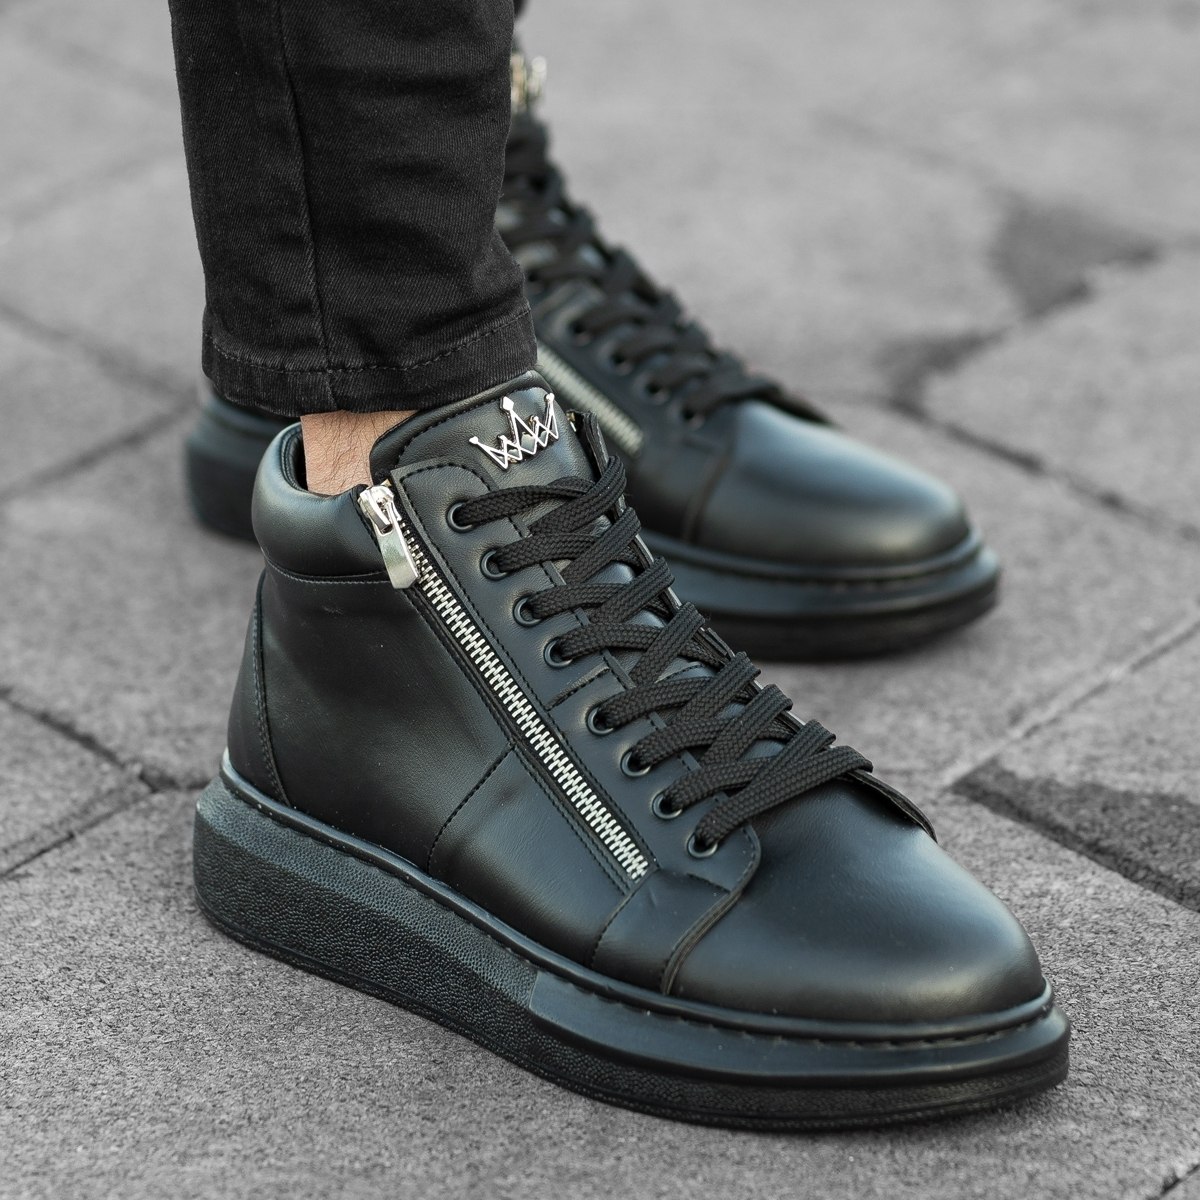 Herren High Top Sneakers Designer Schuhe mit Reissverschluss in schwarz - 1